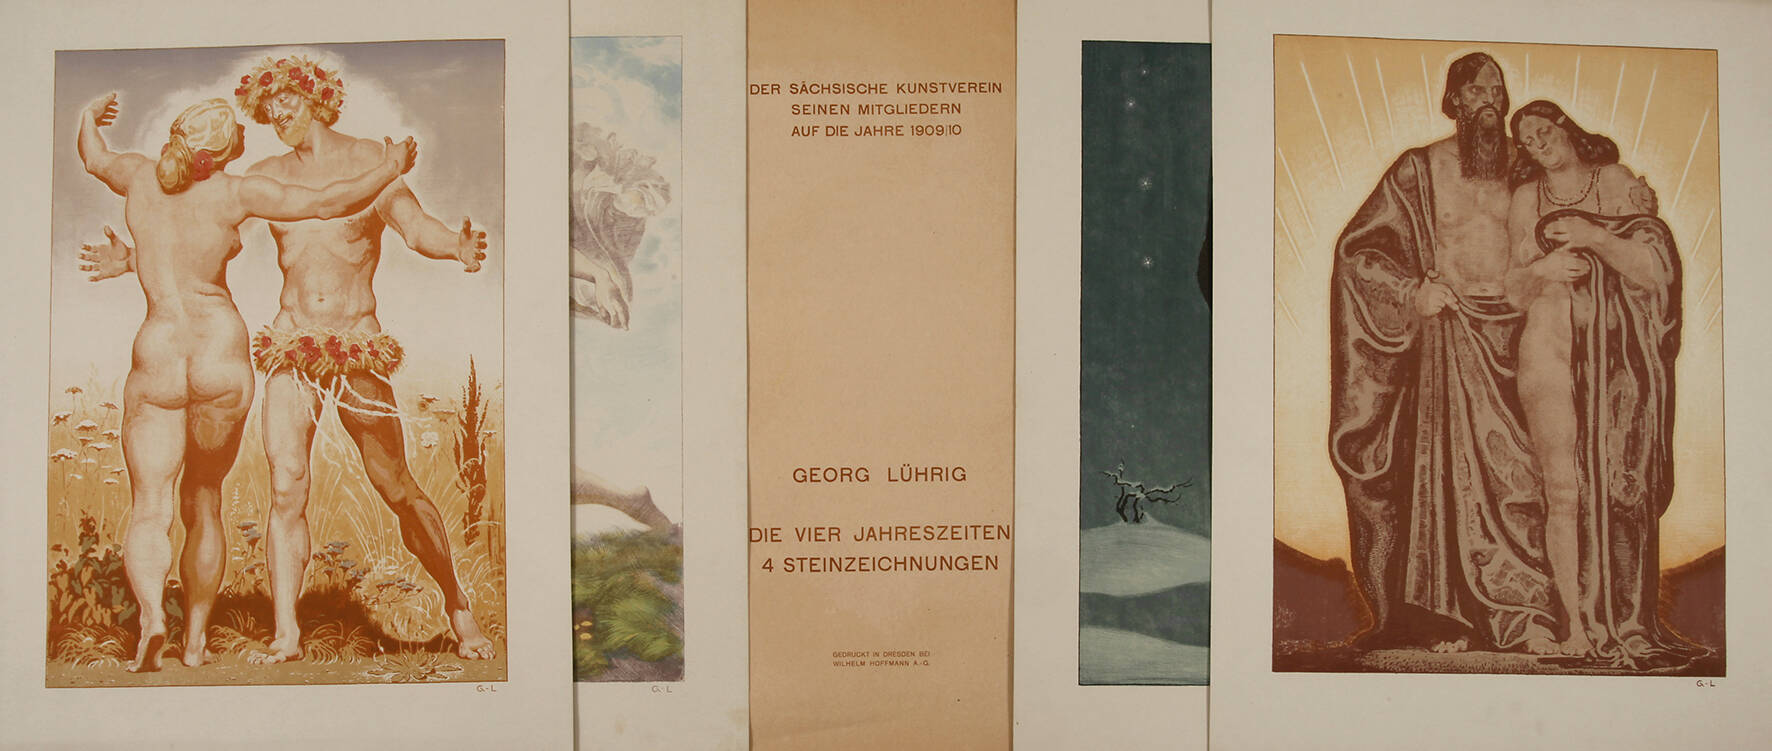 Georg Lührig, "Vier Jahreszeiten"